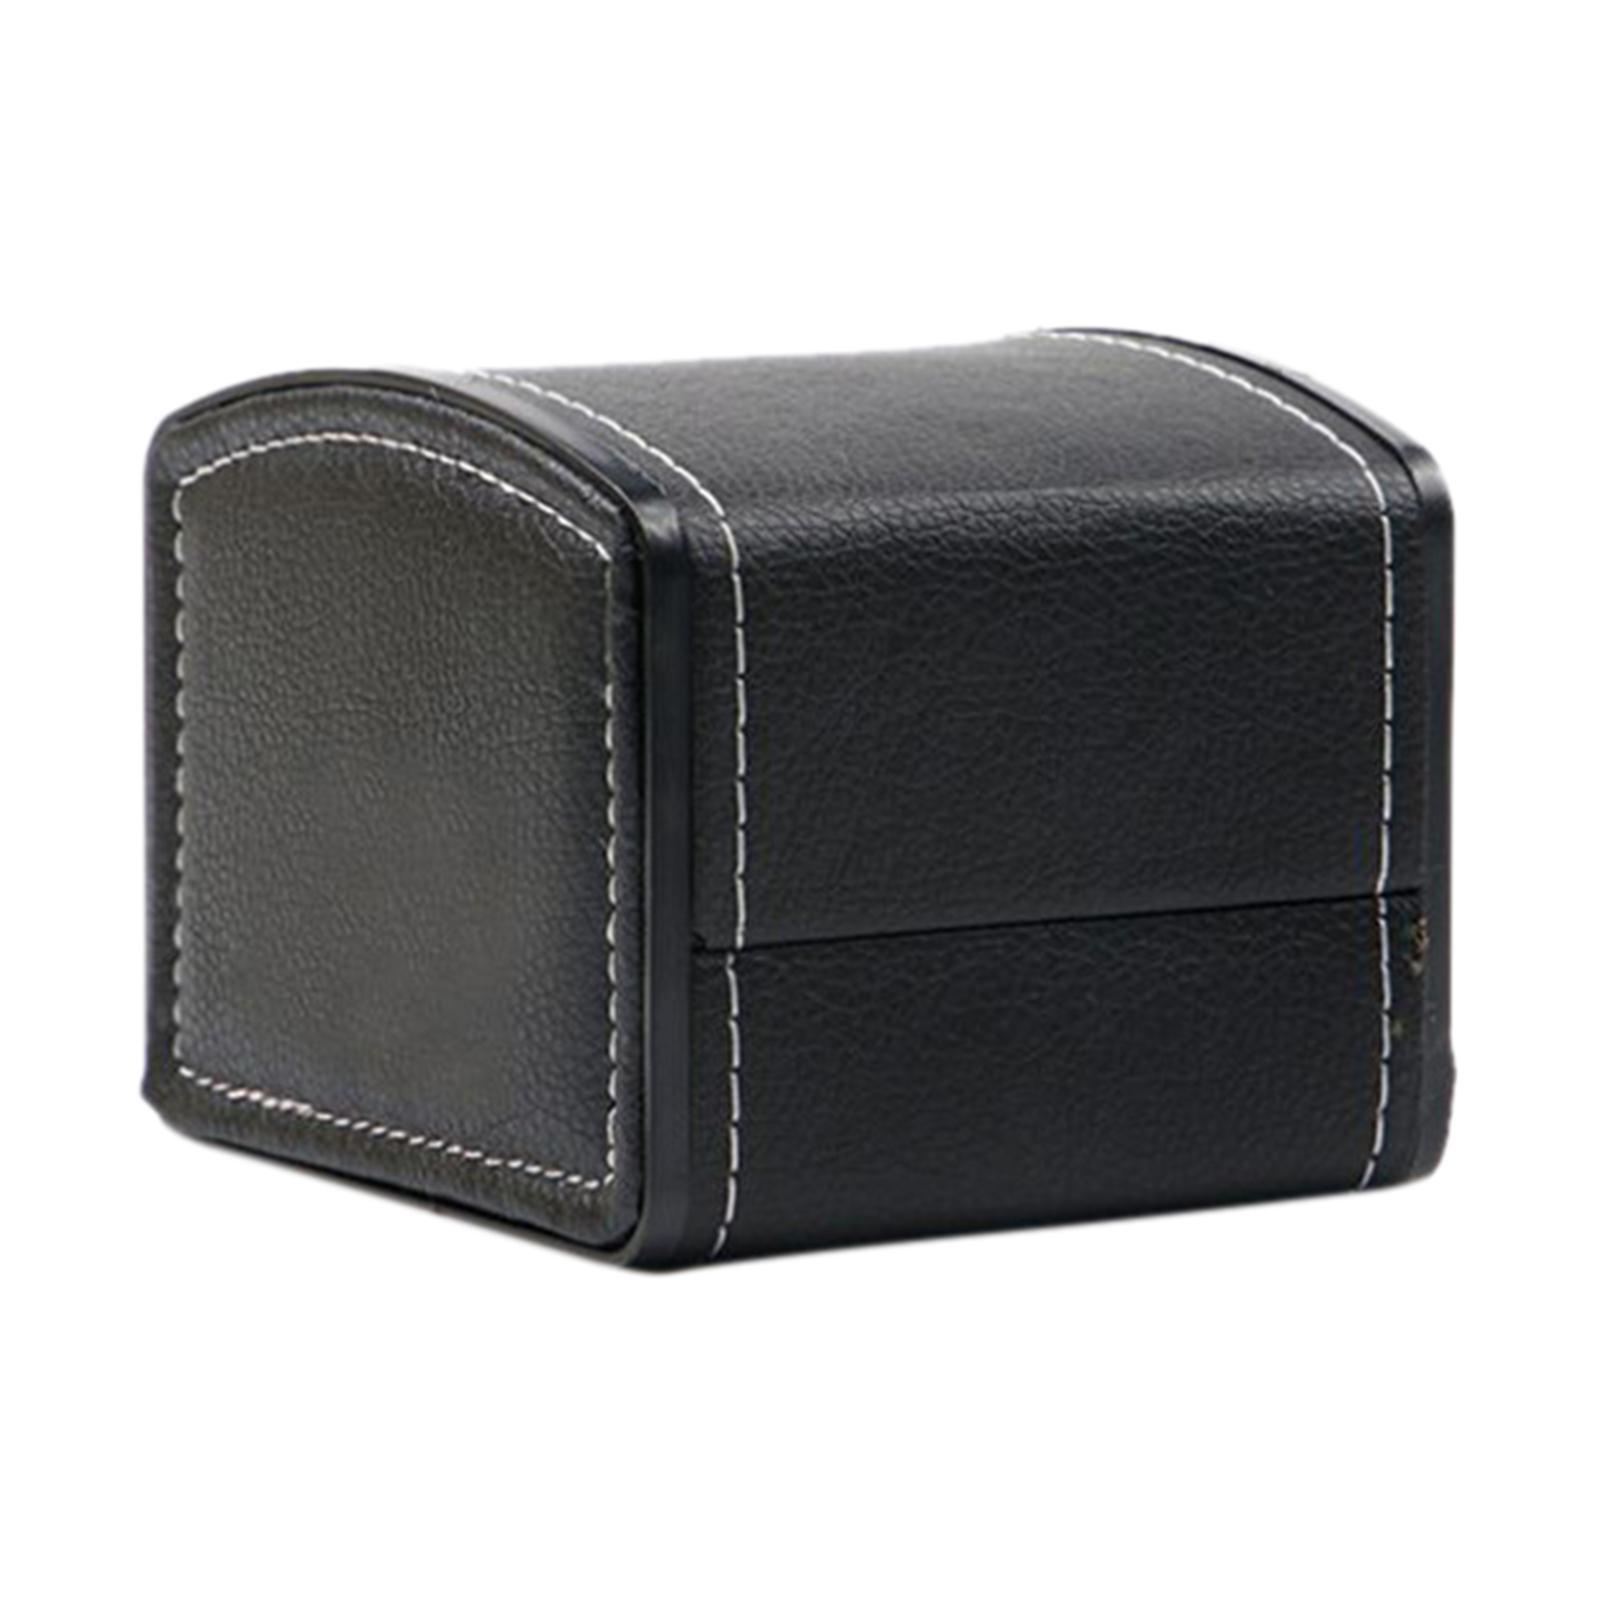 Premium PU Leather Watch Case Storage Holder Organizer Bracelet Black